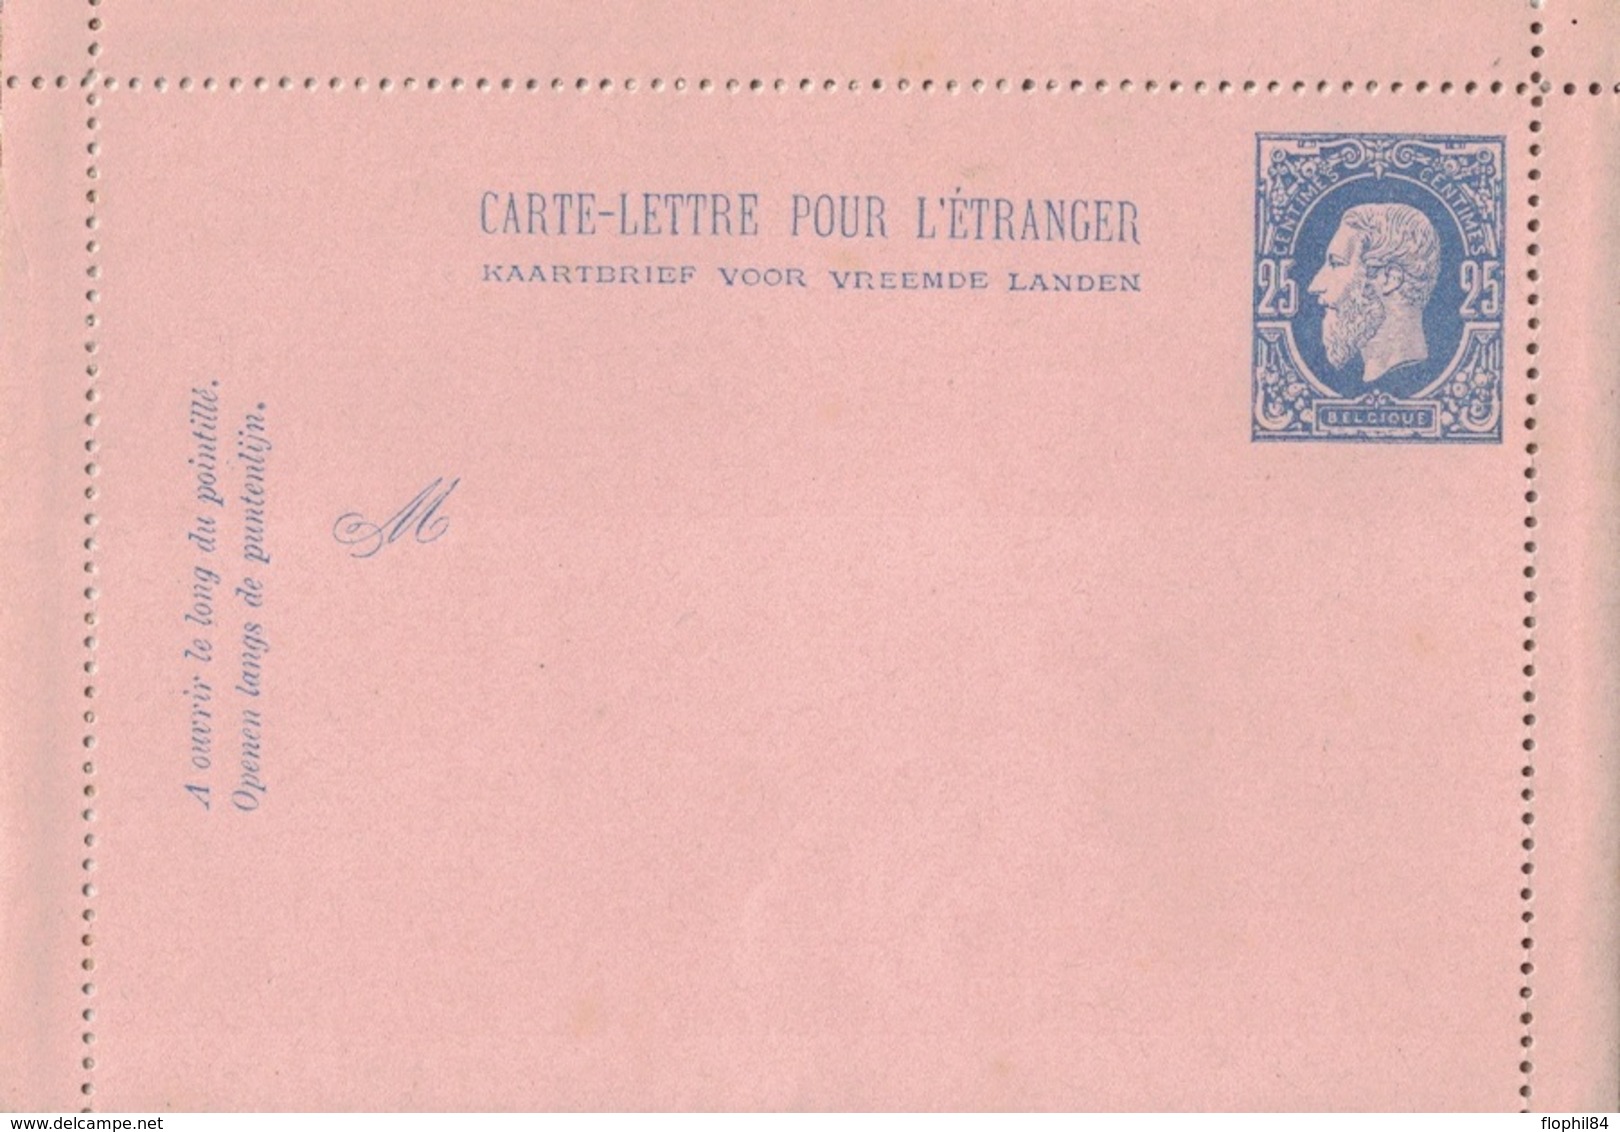 BELGIQUE - CARTE LETTRE NEUVE POUR L'ETRANGER - 25c BLEU. - Kartenbriefe